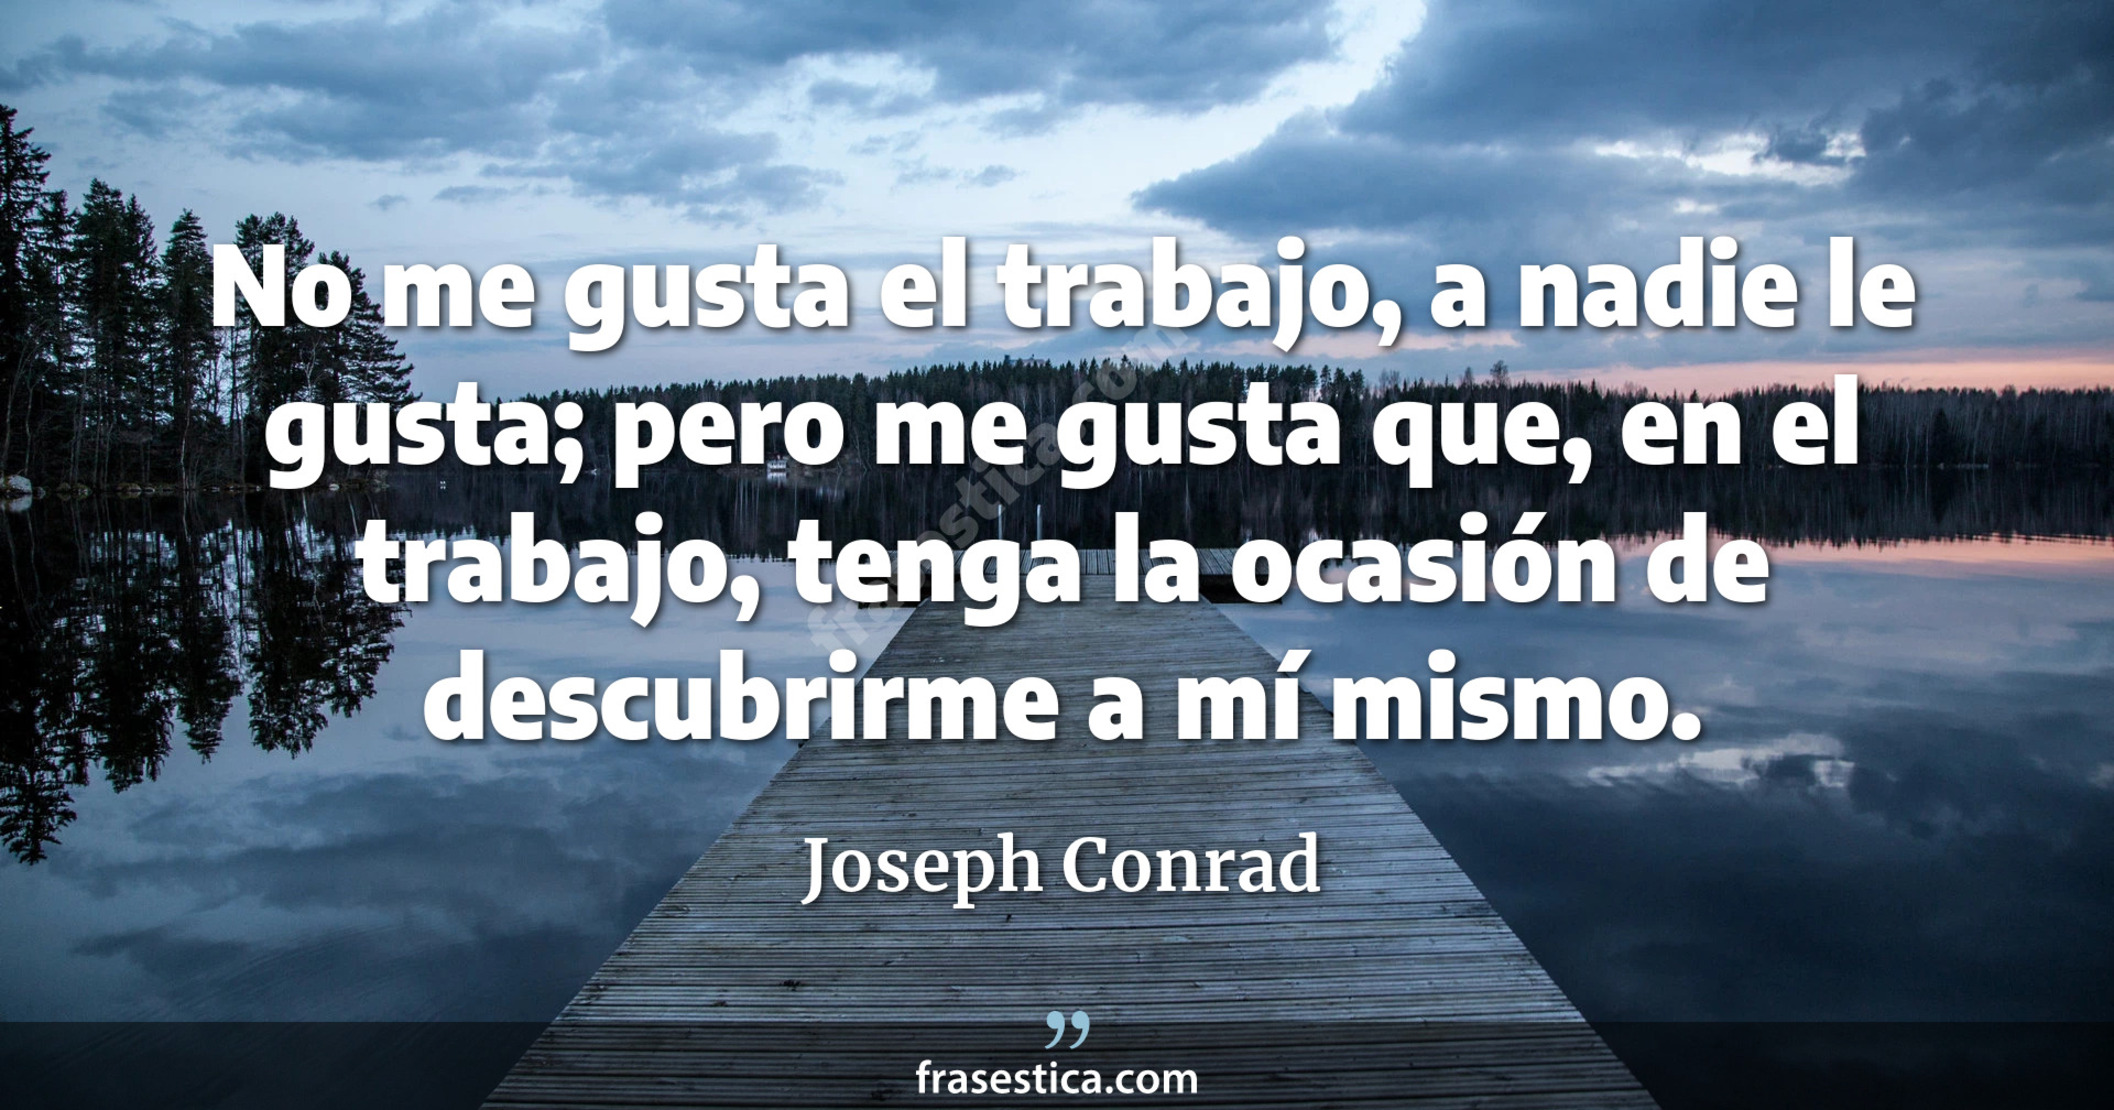 No me gusta el trabajo, a nadie le gusta; pero me gusta que, en el trabajo, tenga la ocasión de descubrirme a mí mismo. - Joseph Conrad